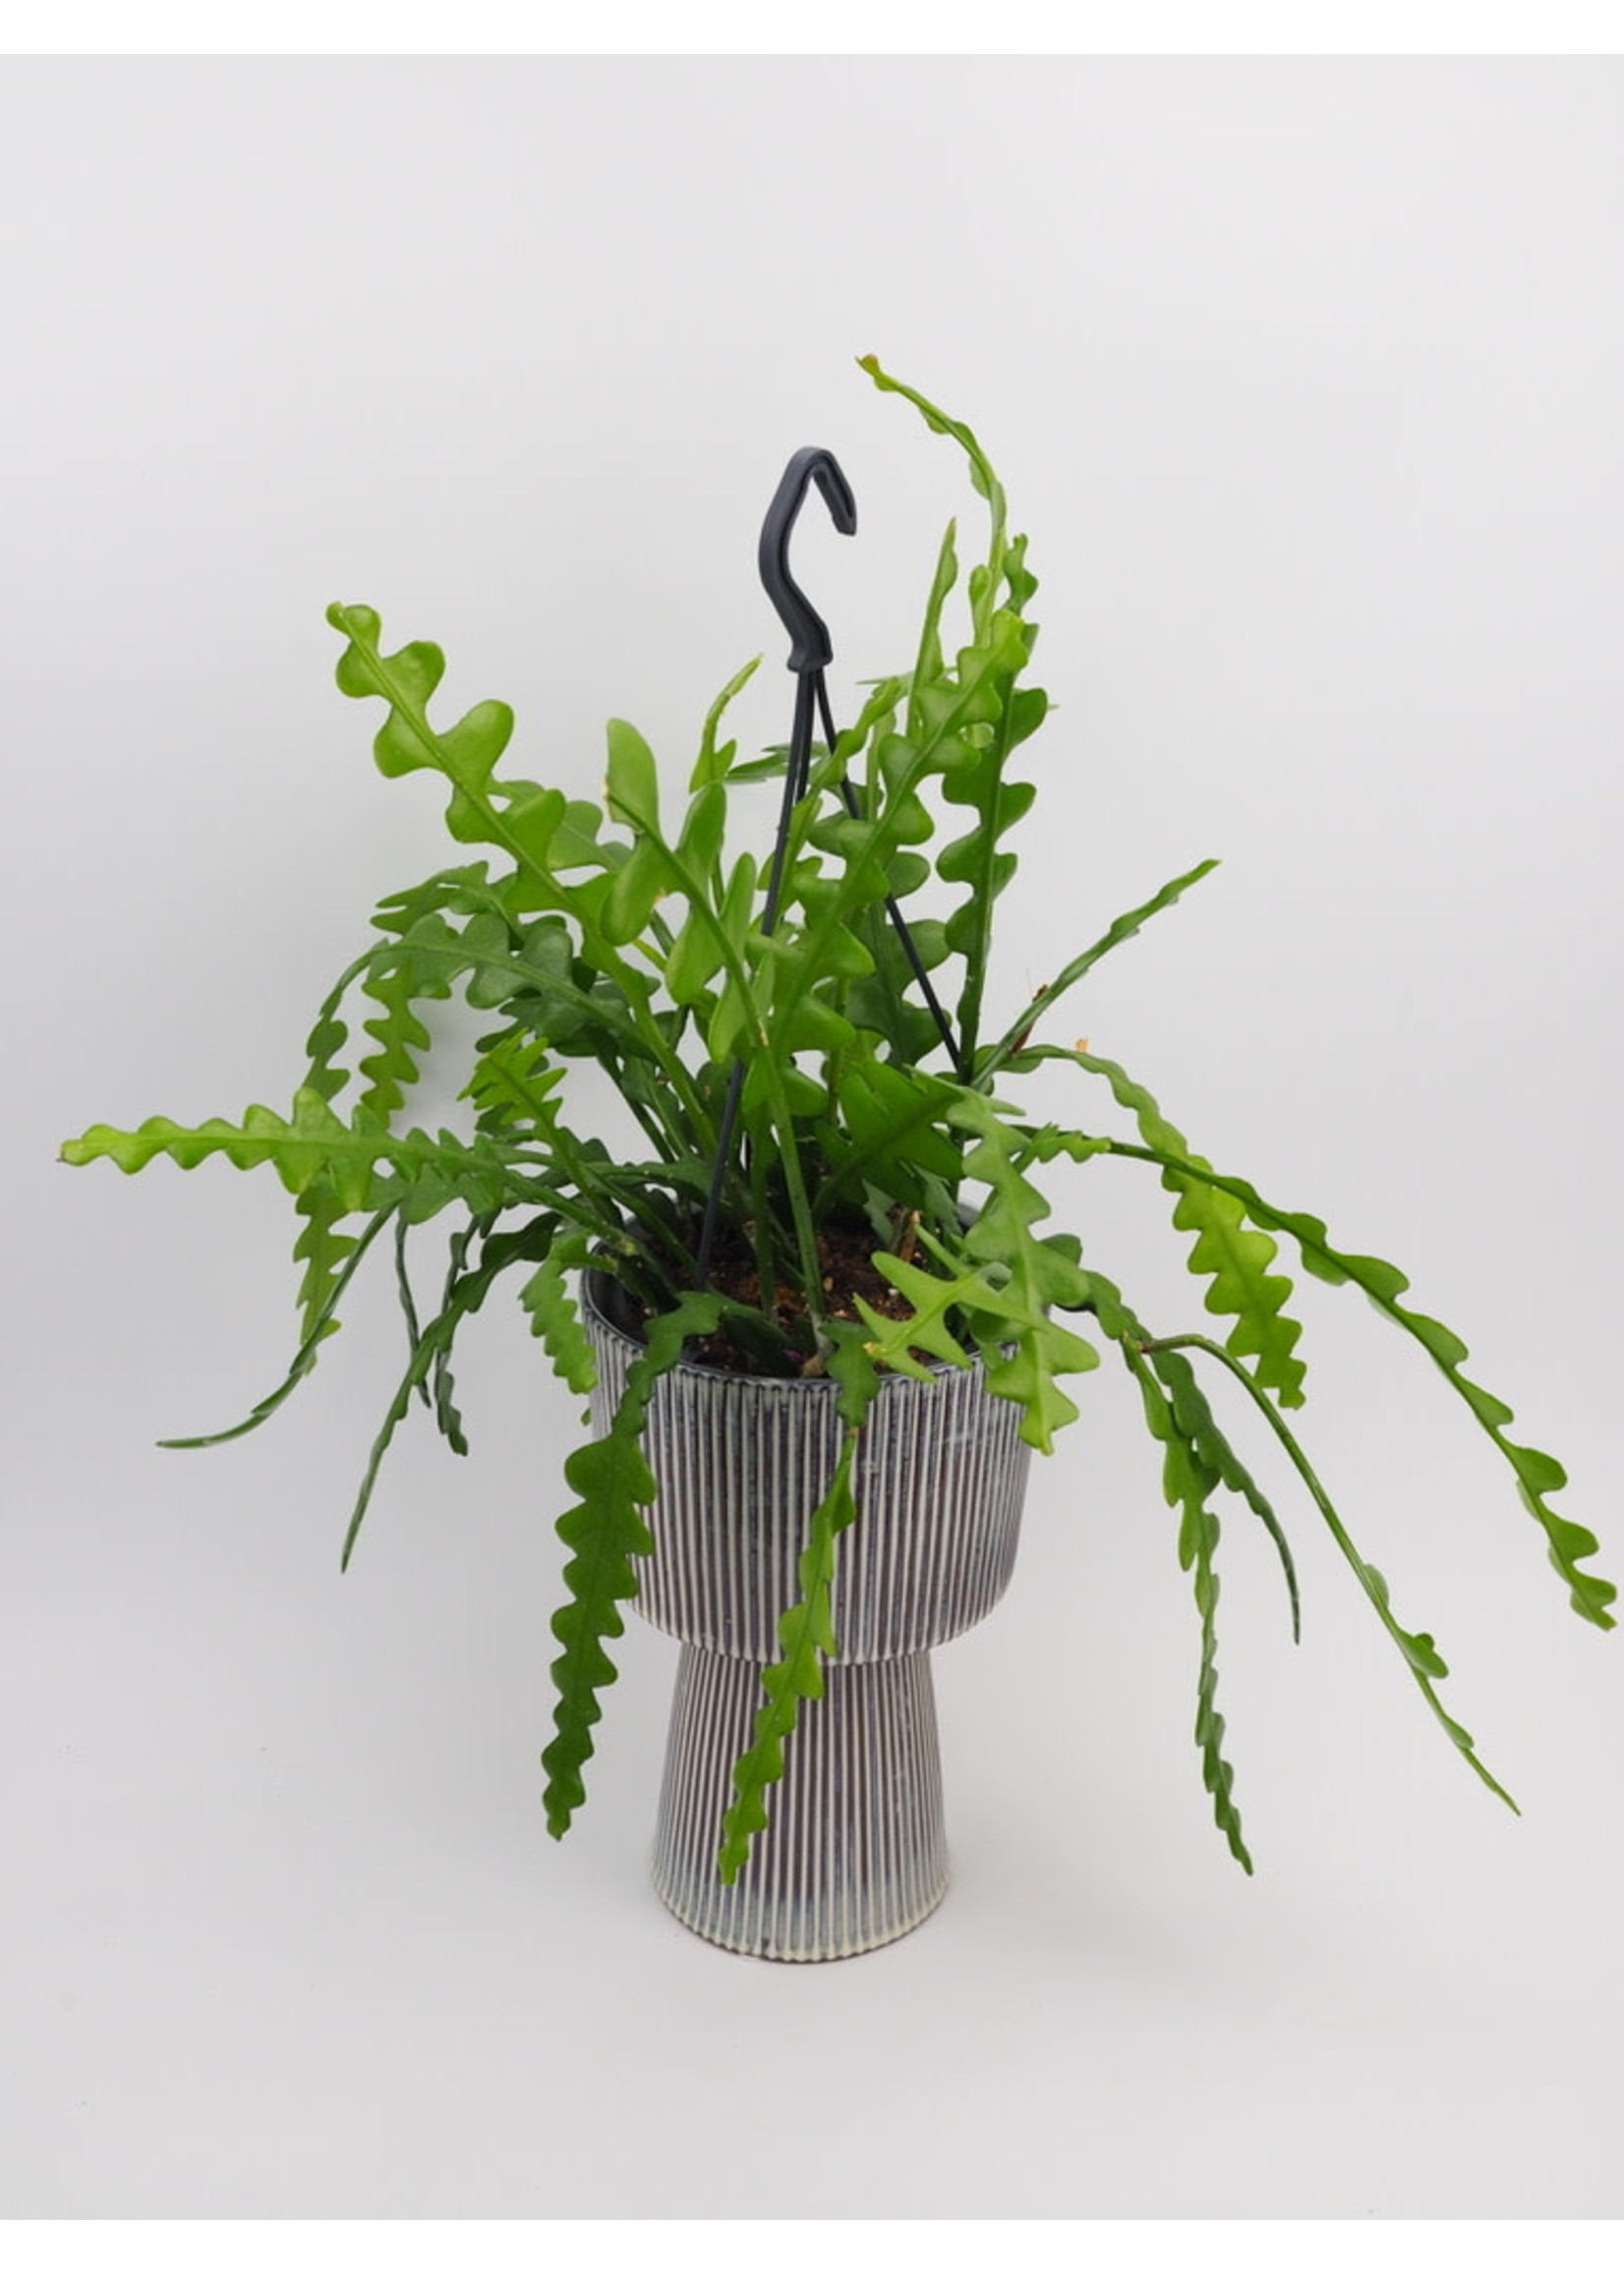 Epiphyllum Anguliger [Fishbone Cactus] ∅14 (hangpot)